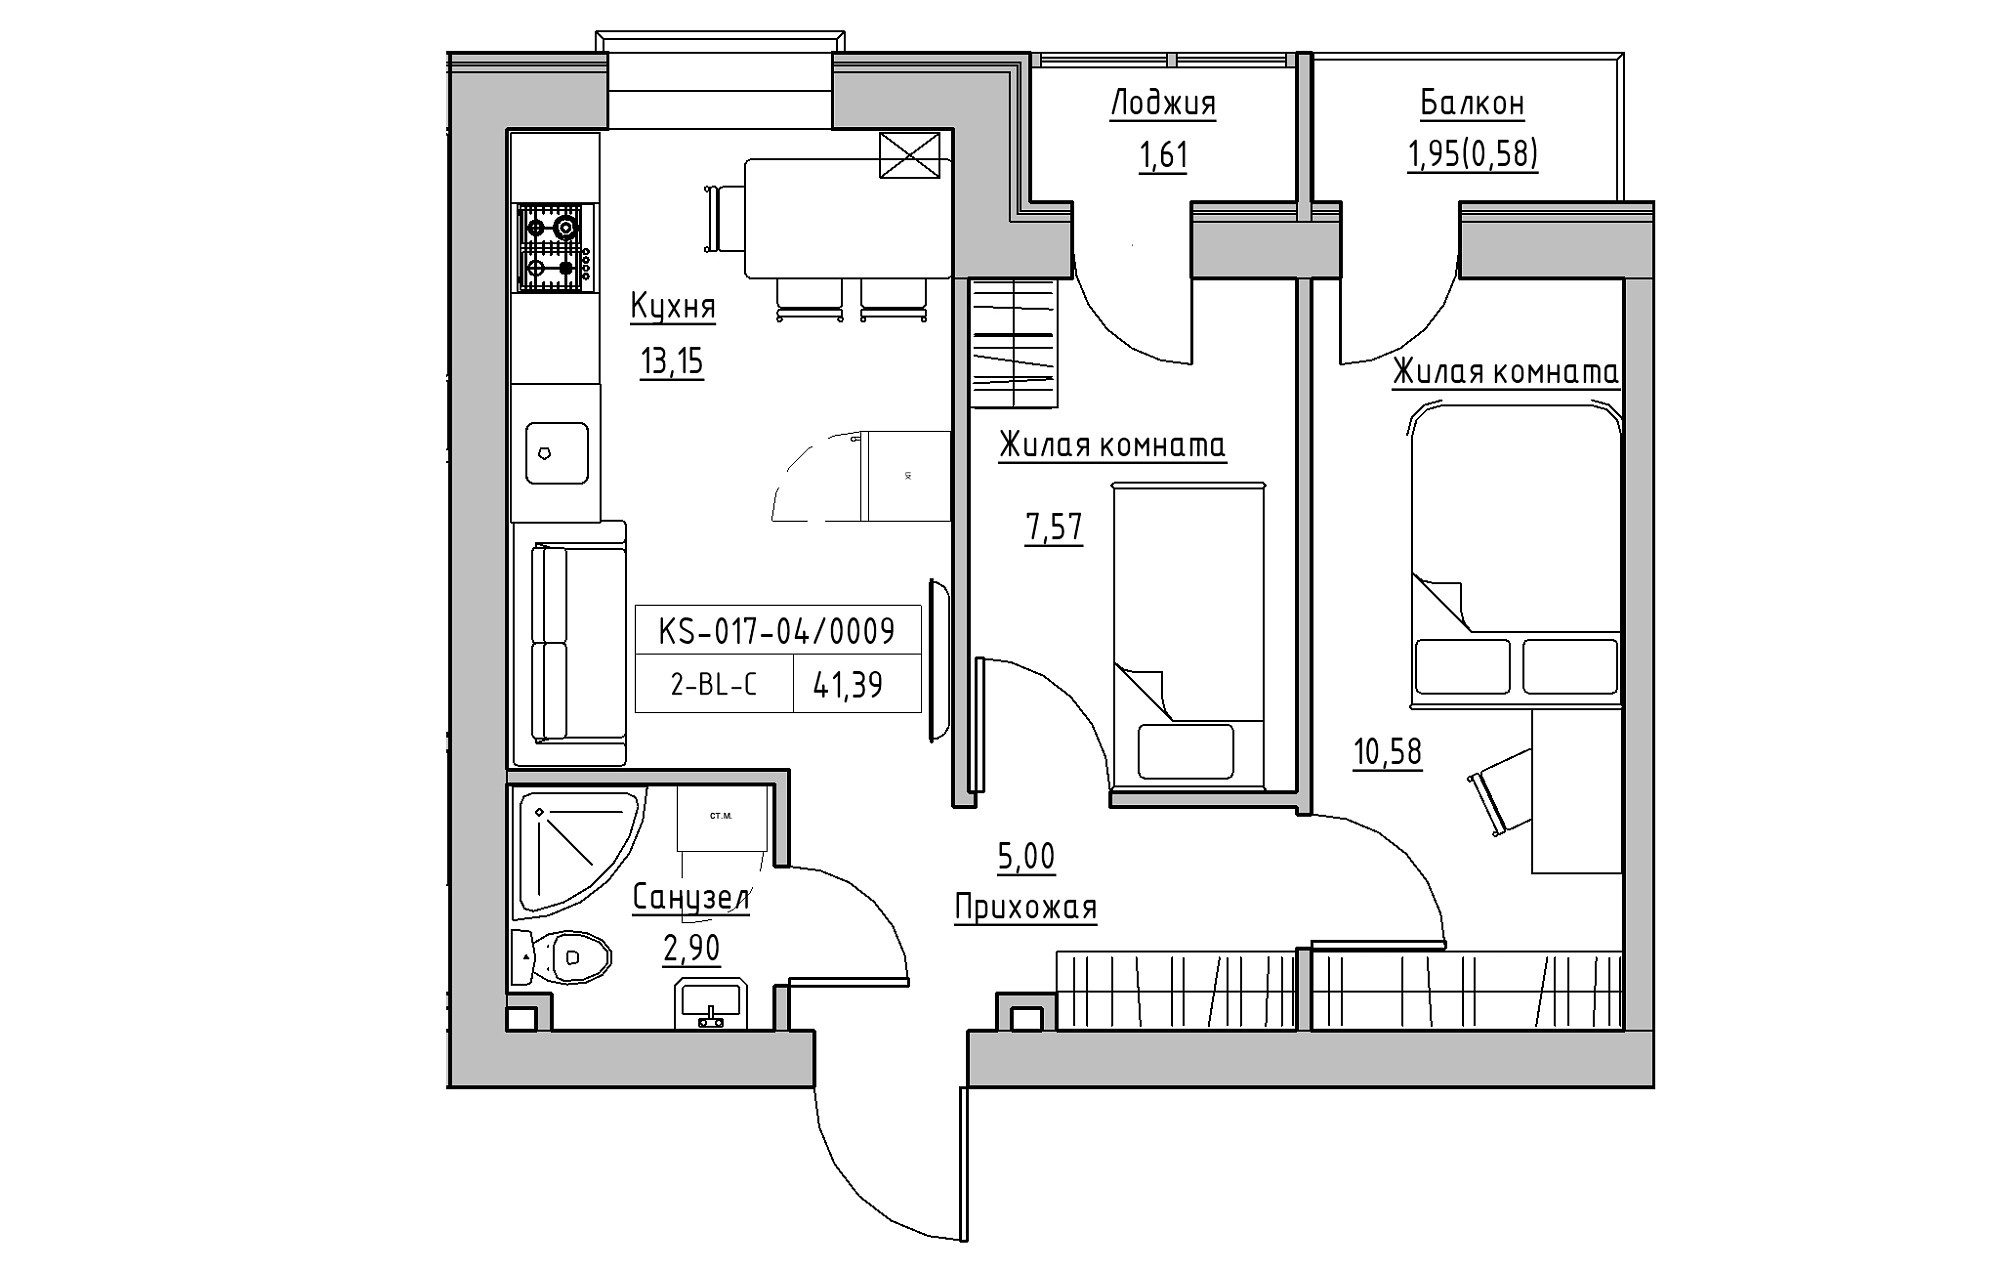 Планування 2-к квартира площею 41.39м2, KS-017-04/0009.